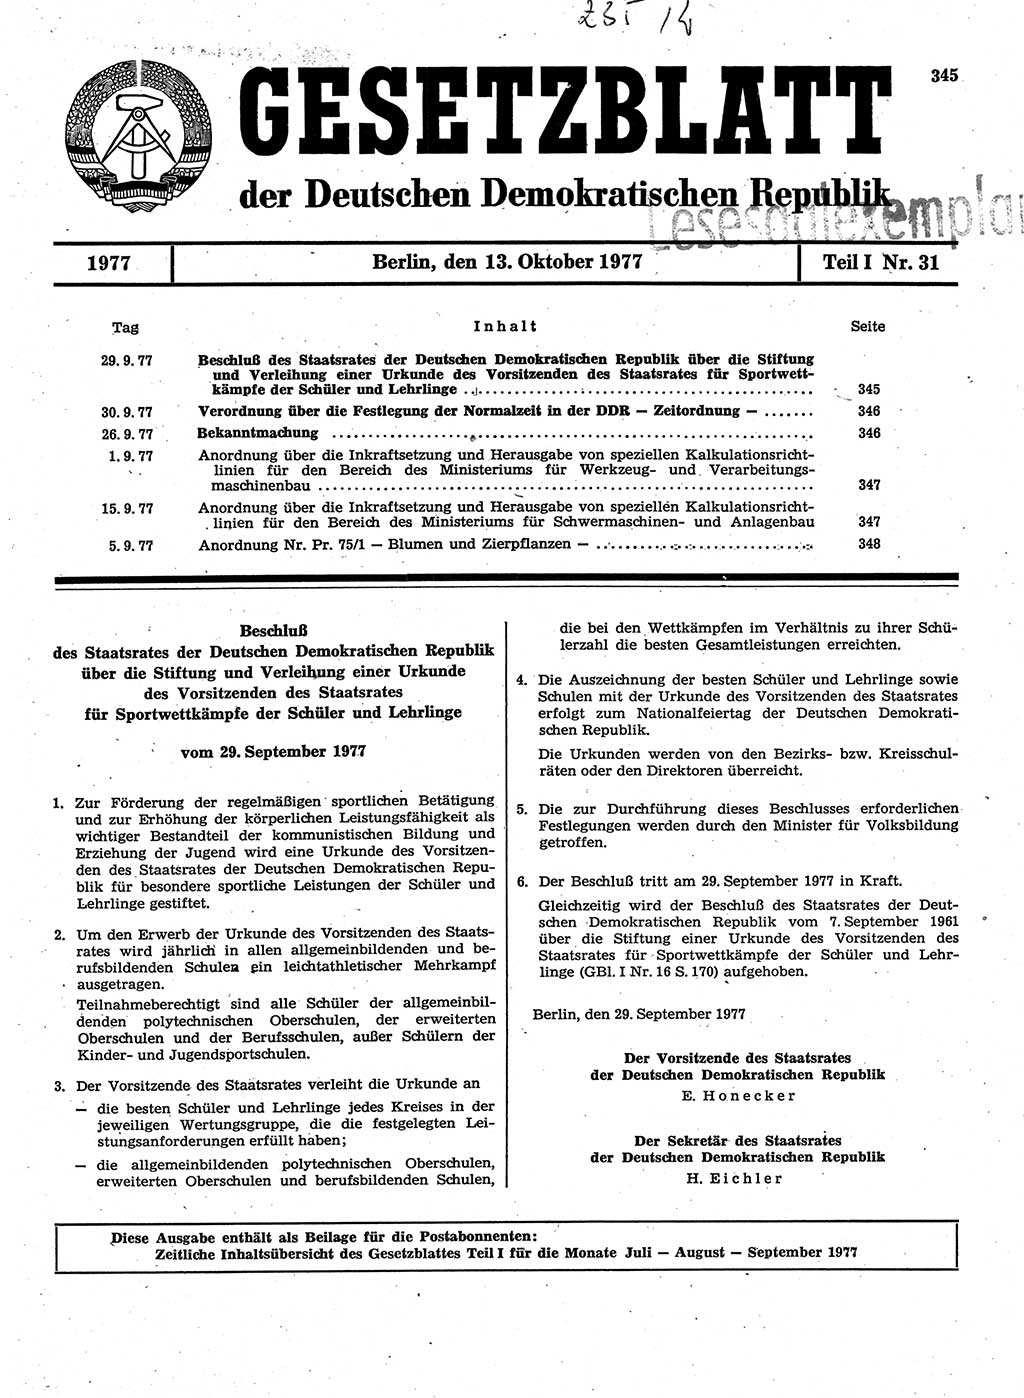 Gesetzblatt (GBl.) der Deutschen Demokratischen Republik (DDR) Teil Ⅰ 1977, Seite 345 (GBl. DDR Ⅰ 1977, S. 345)